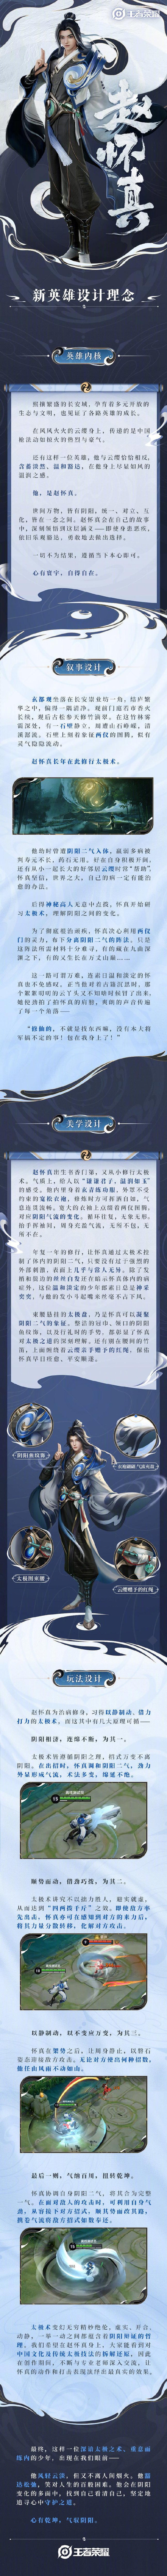 《王者荣耀》新英雄赵怀真官宣12月上线，莱西奥明年1月上线